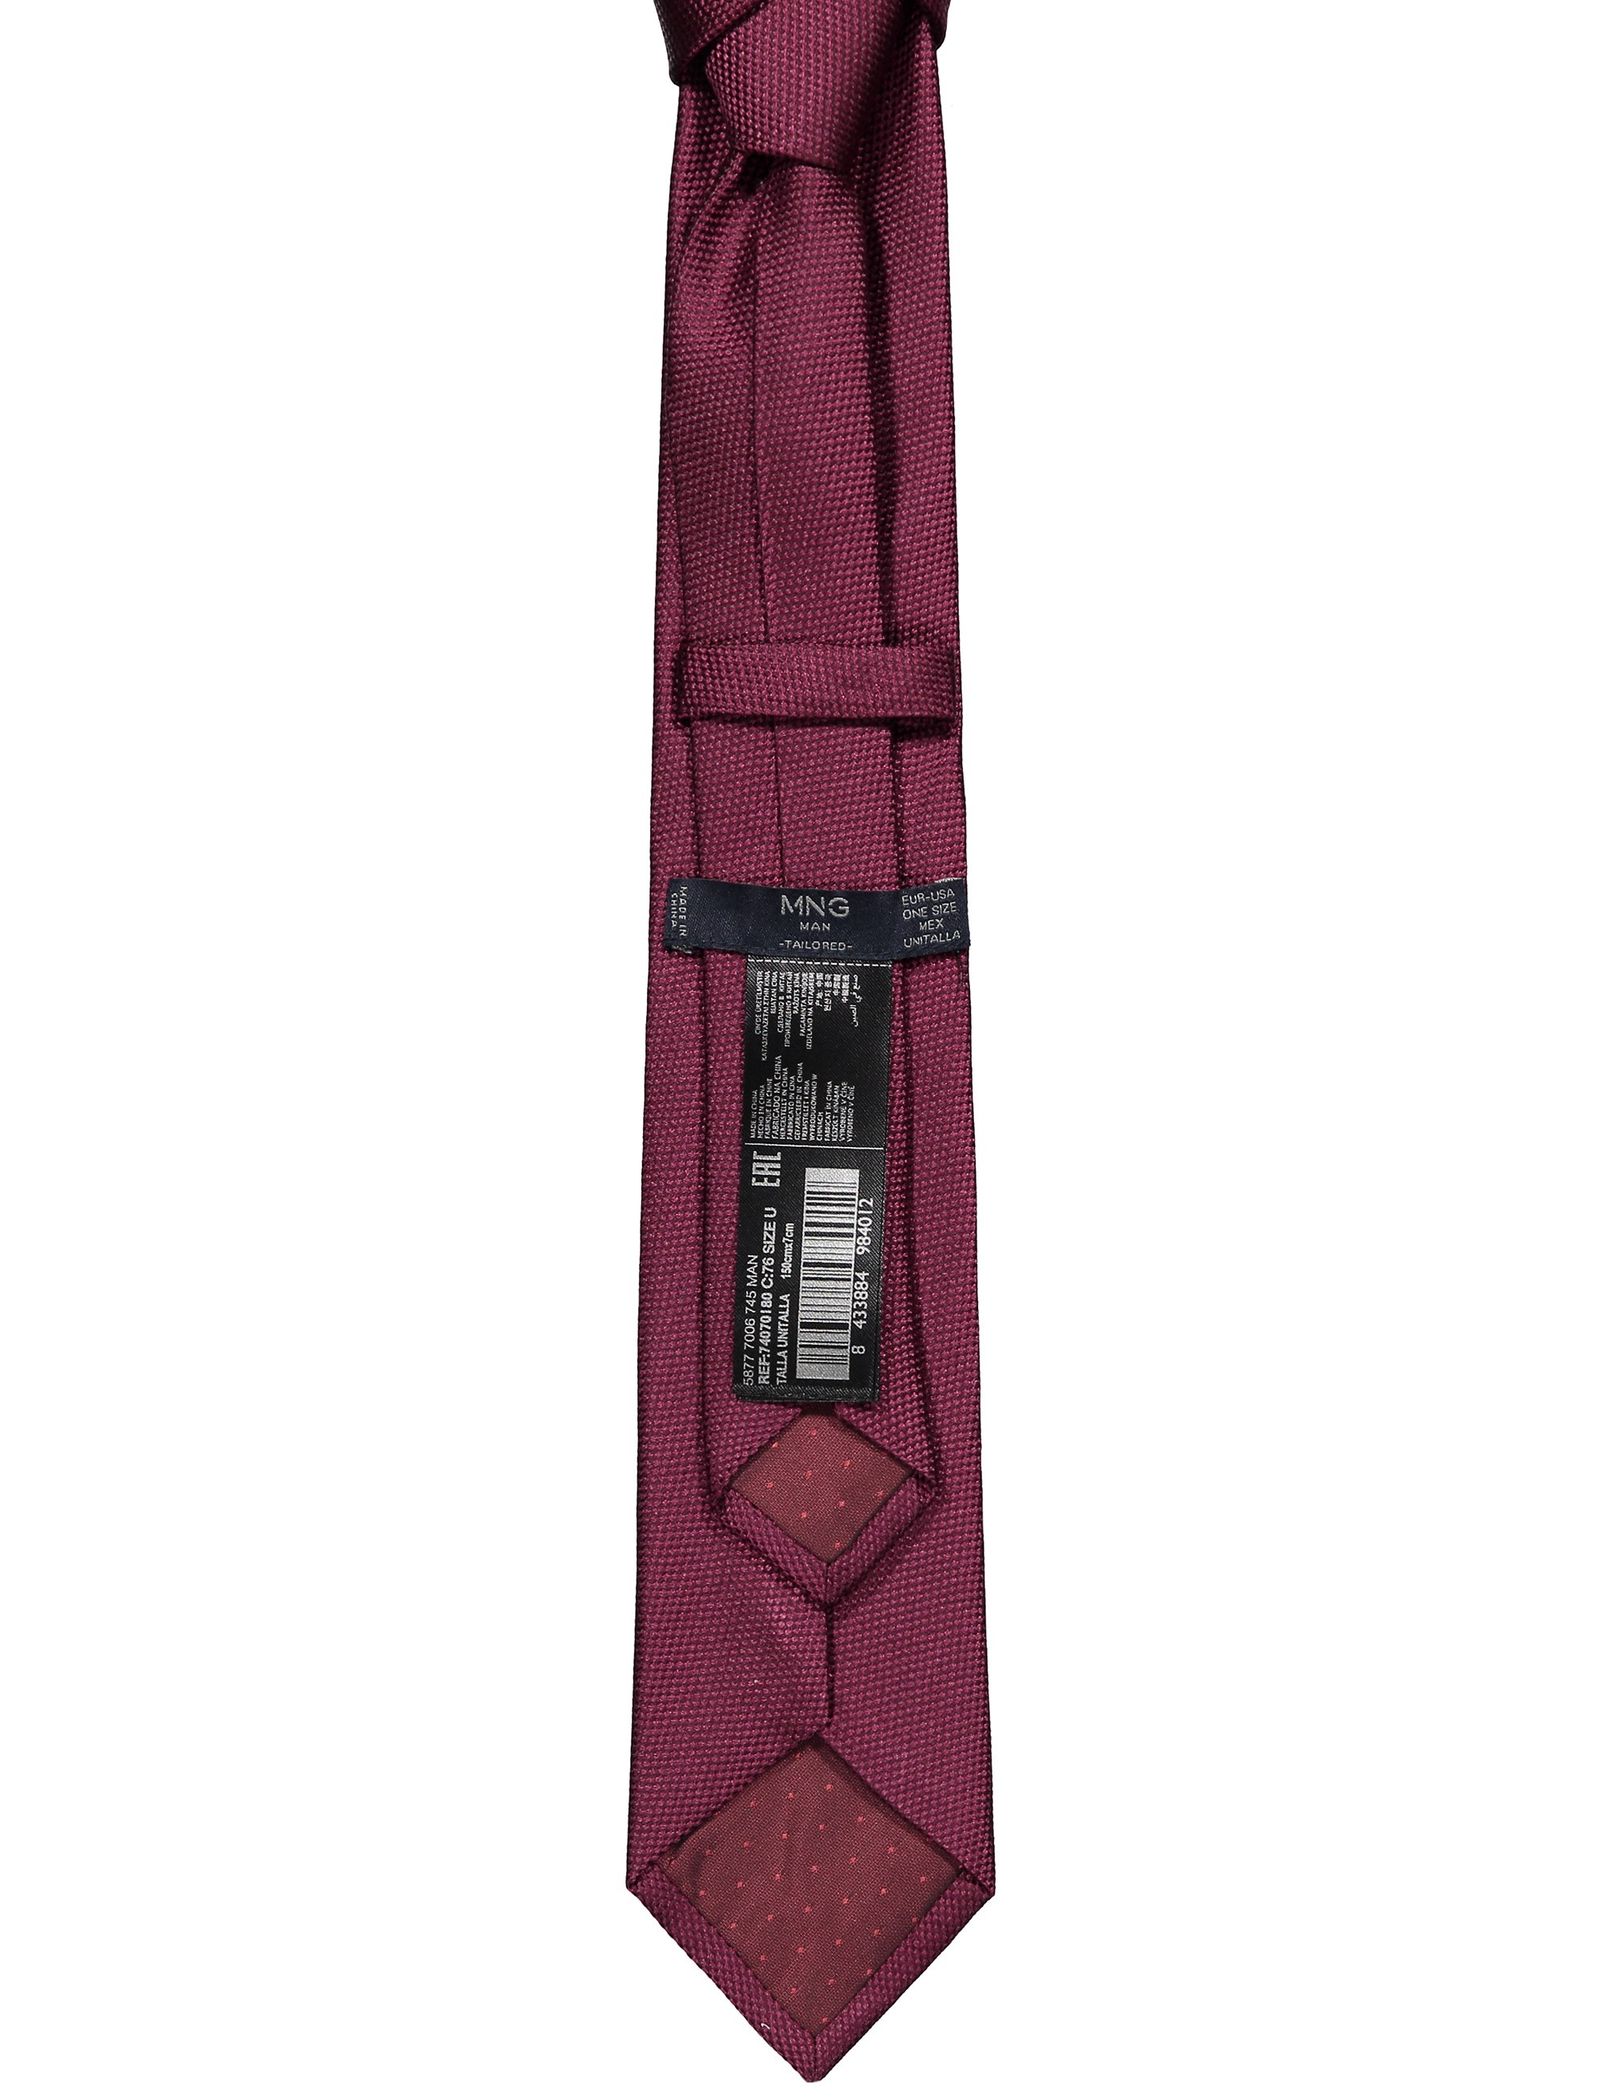 کراوات ابریشمی مردانه - مانگو - قرمز تيره - 3